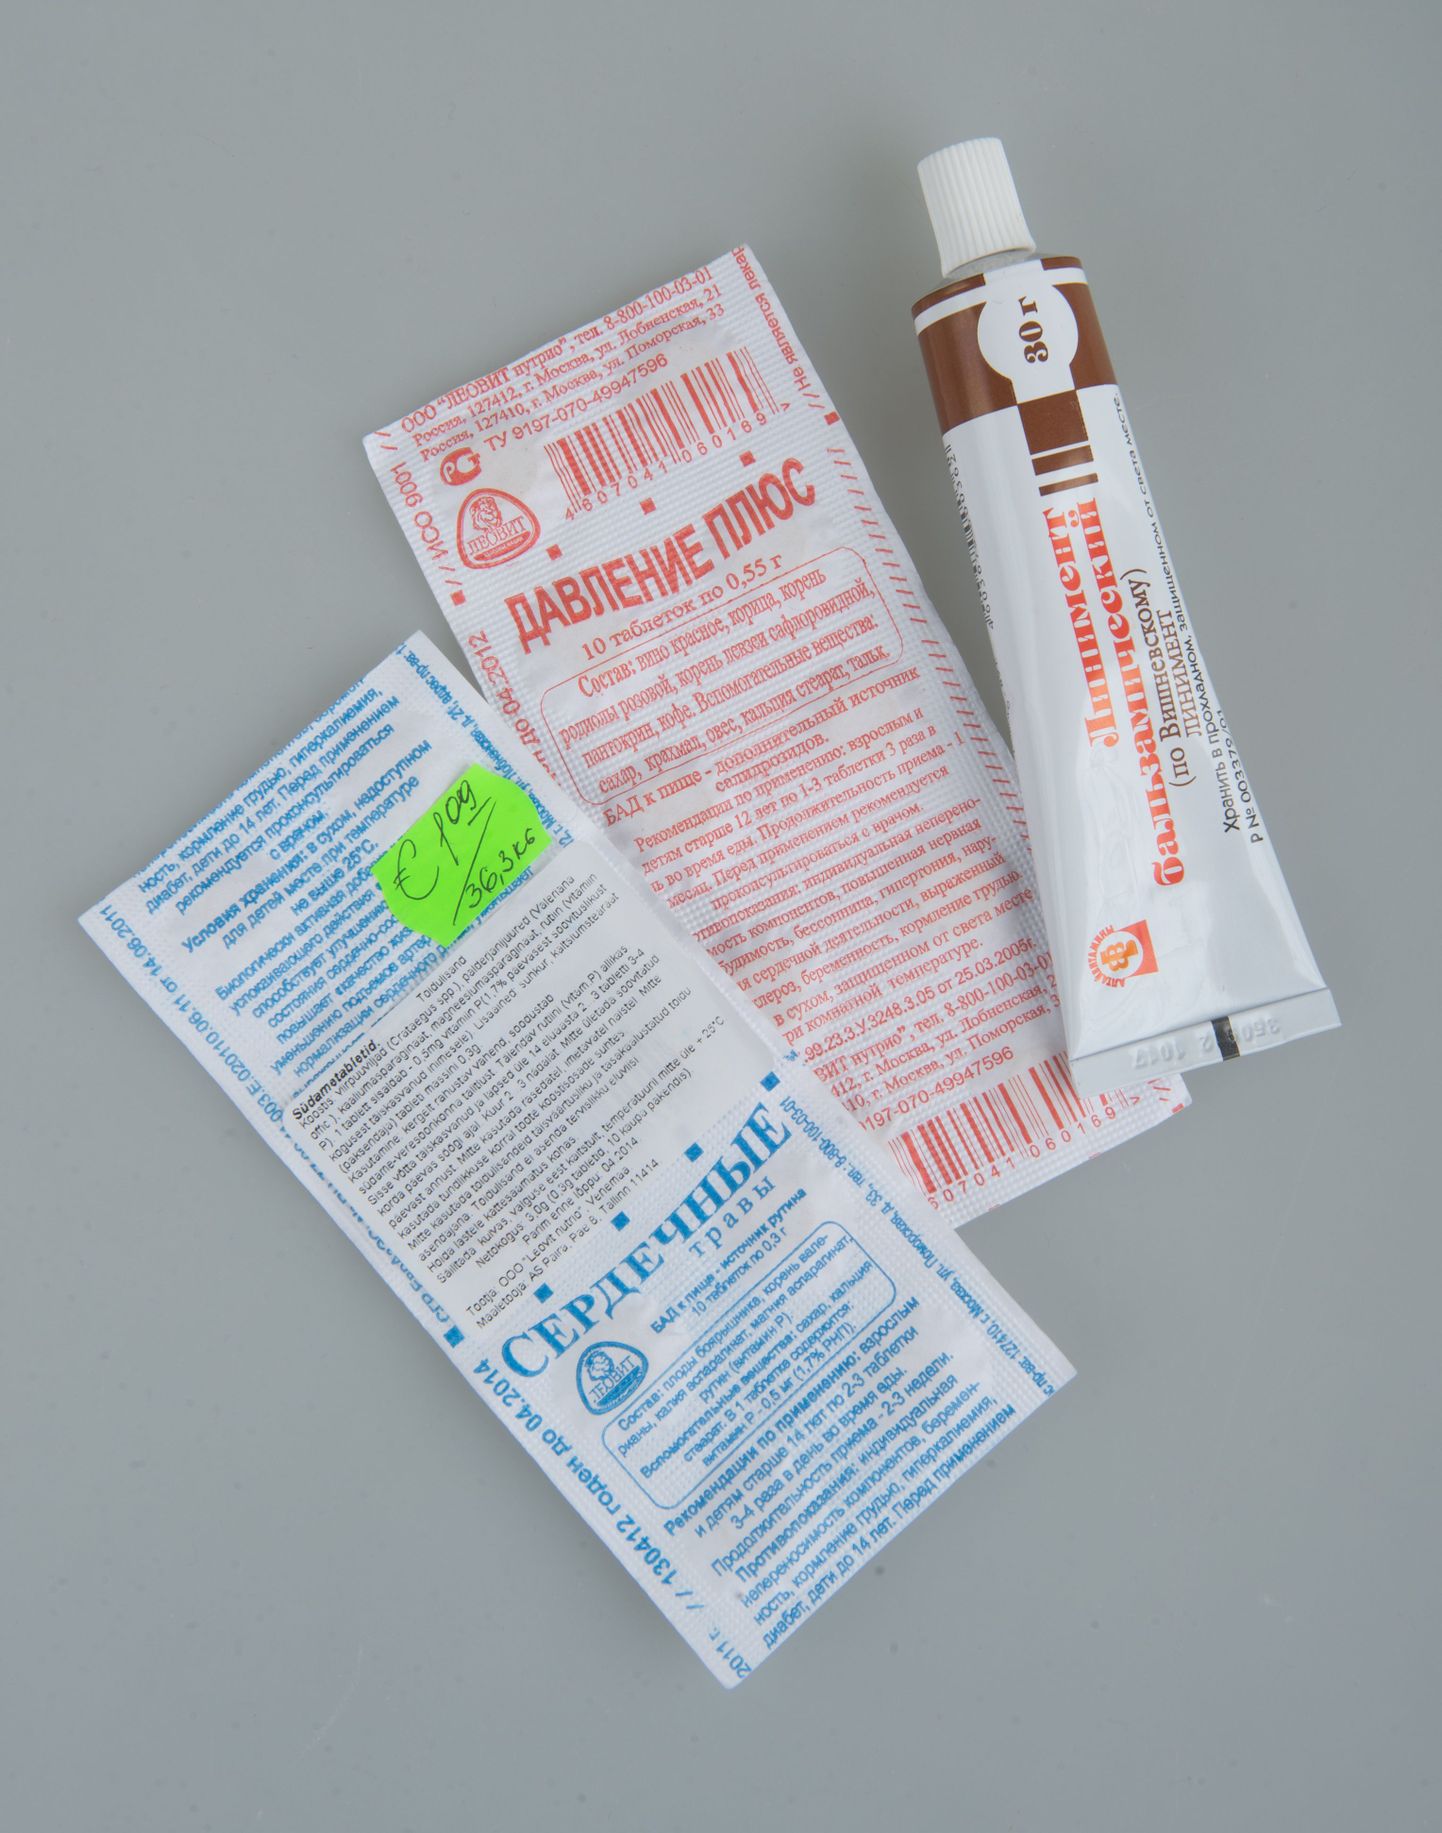 Kuigi tabletilehed meenutavad ravimeid, on tegu siiski toidulisandiga, mida võib turul müüa. Tuubis oleva Višnevski salvi müük aga on väljaspool apteeki keelatud.